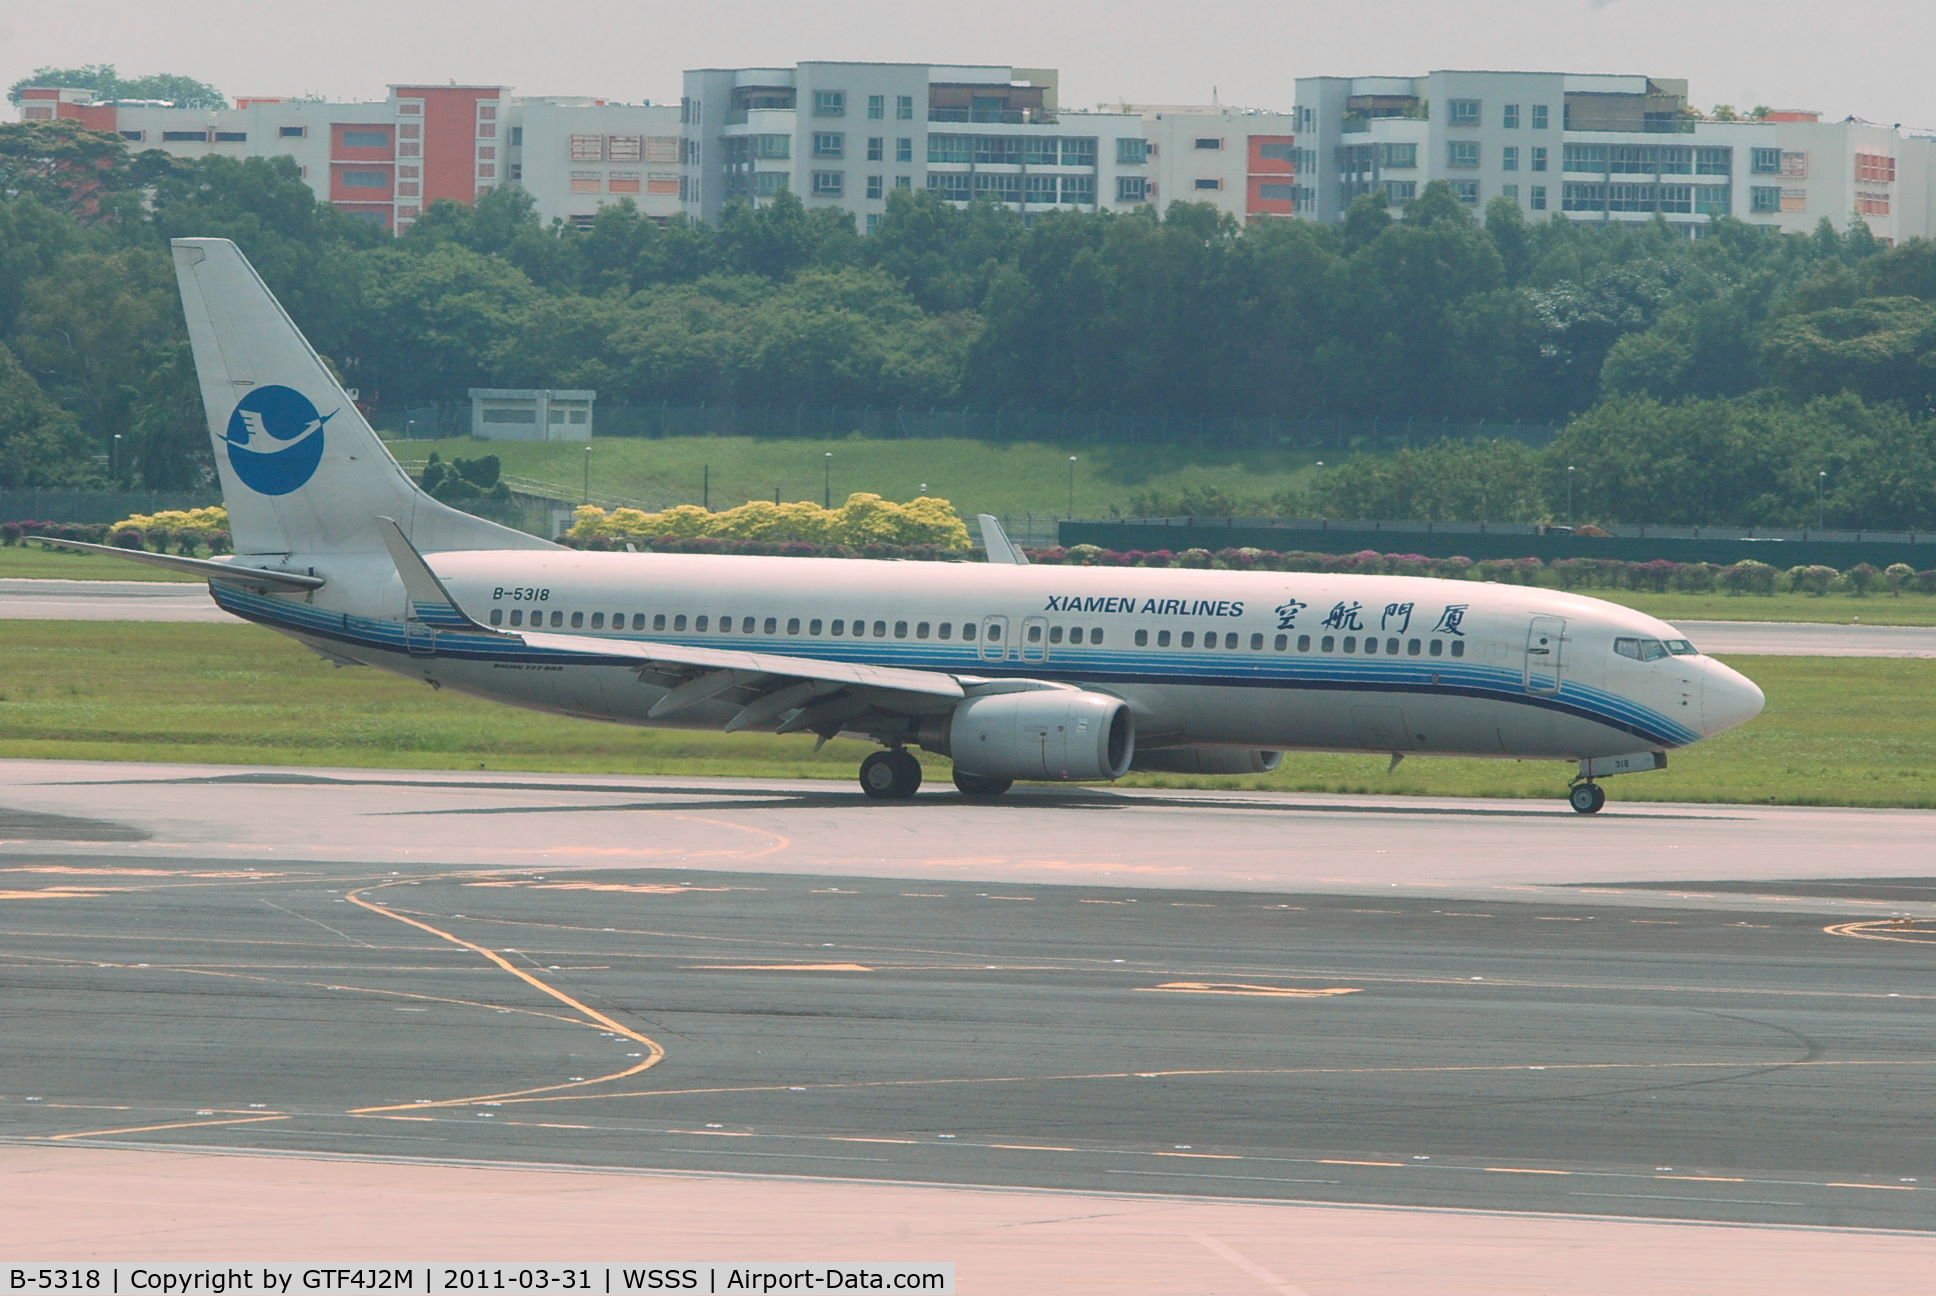 B-5318, 2007 Boeing 737-85C C/N 30723/2283, 5-5318 at Singapore, Changi 31.3.11